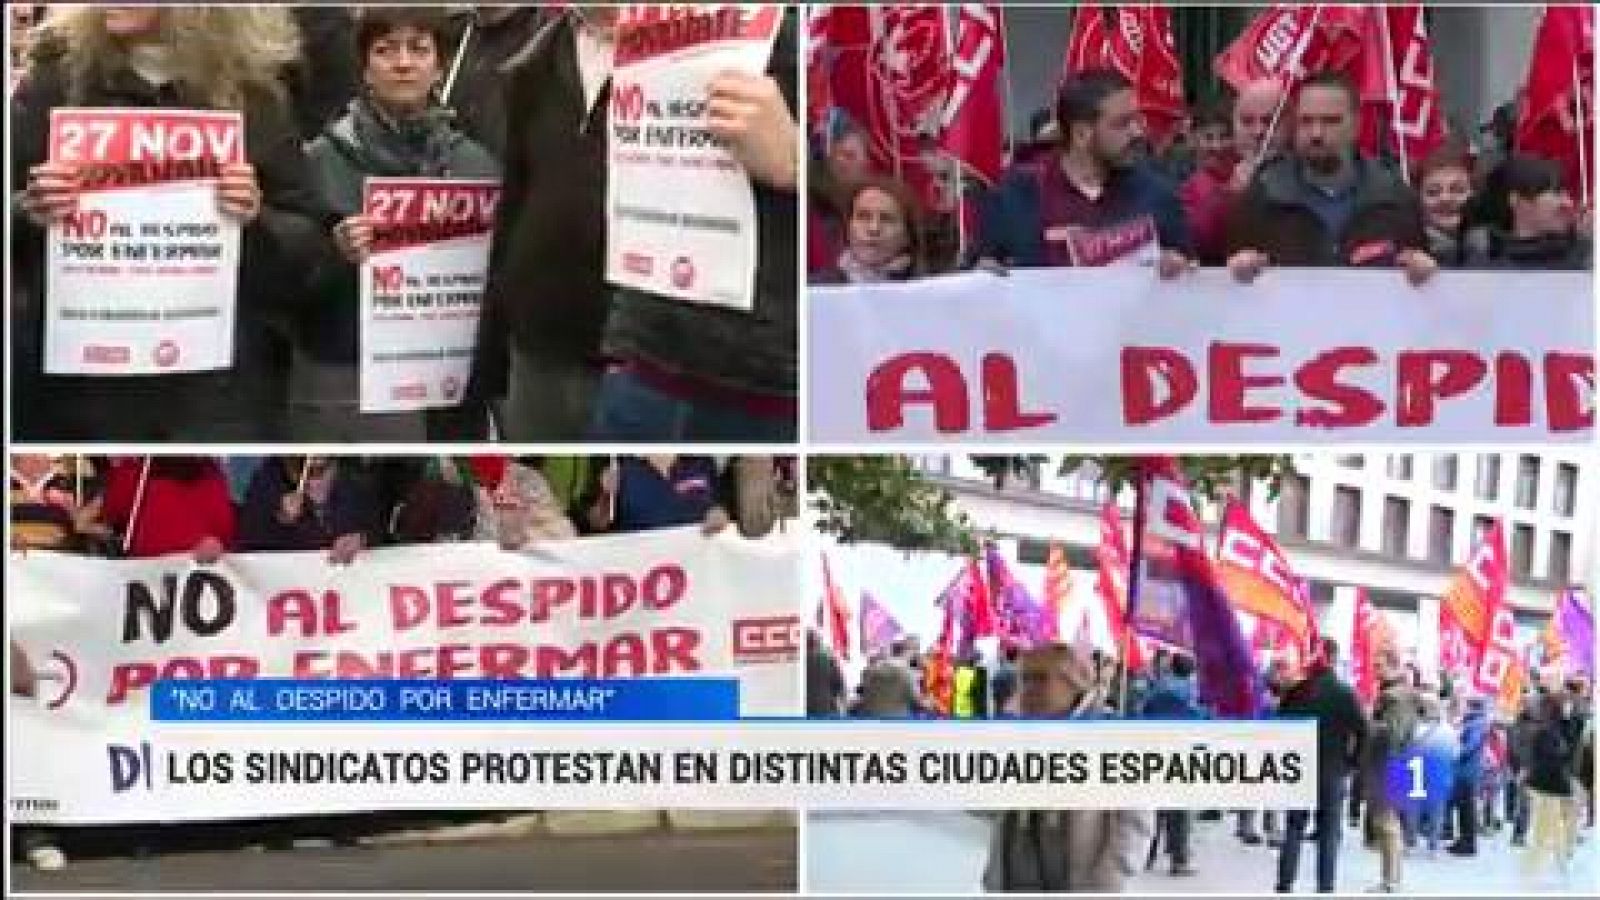 Los sindicatos protestan en varias ciudades españolas contra el "despido por enfermar"